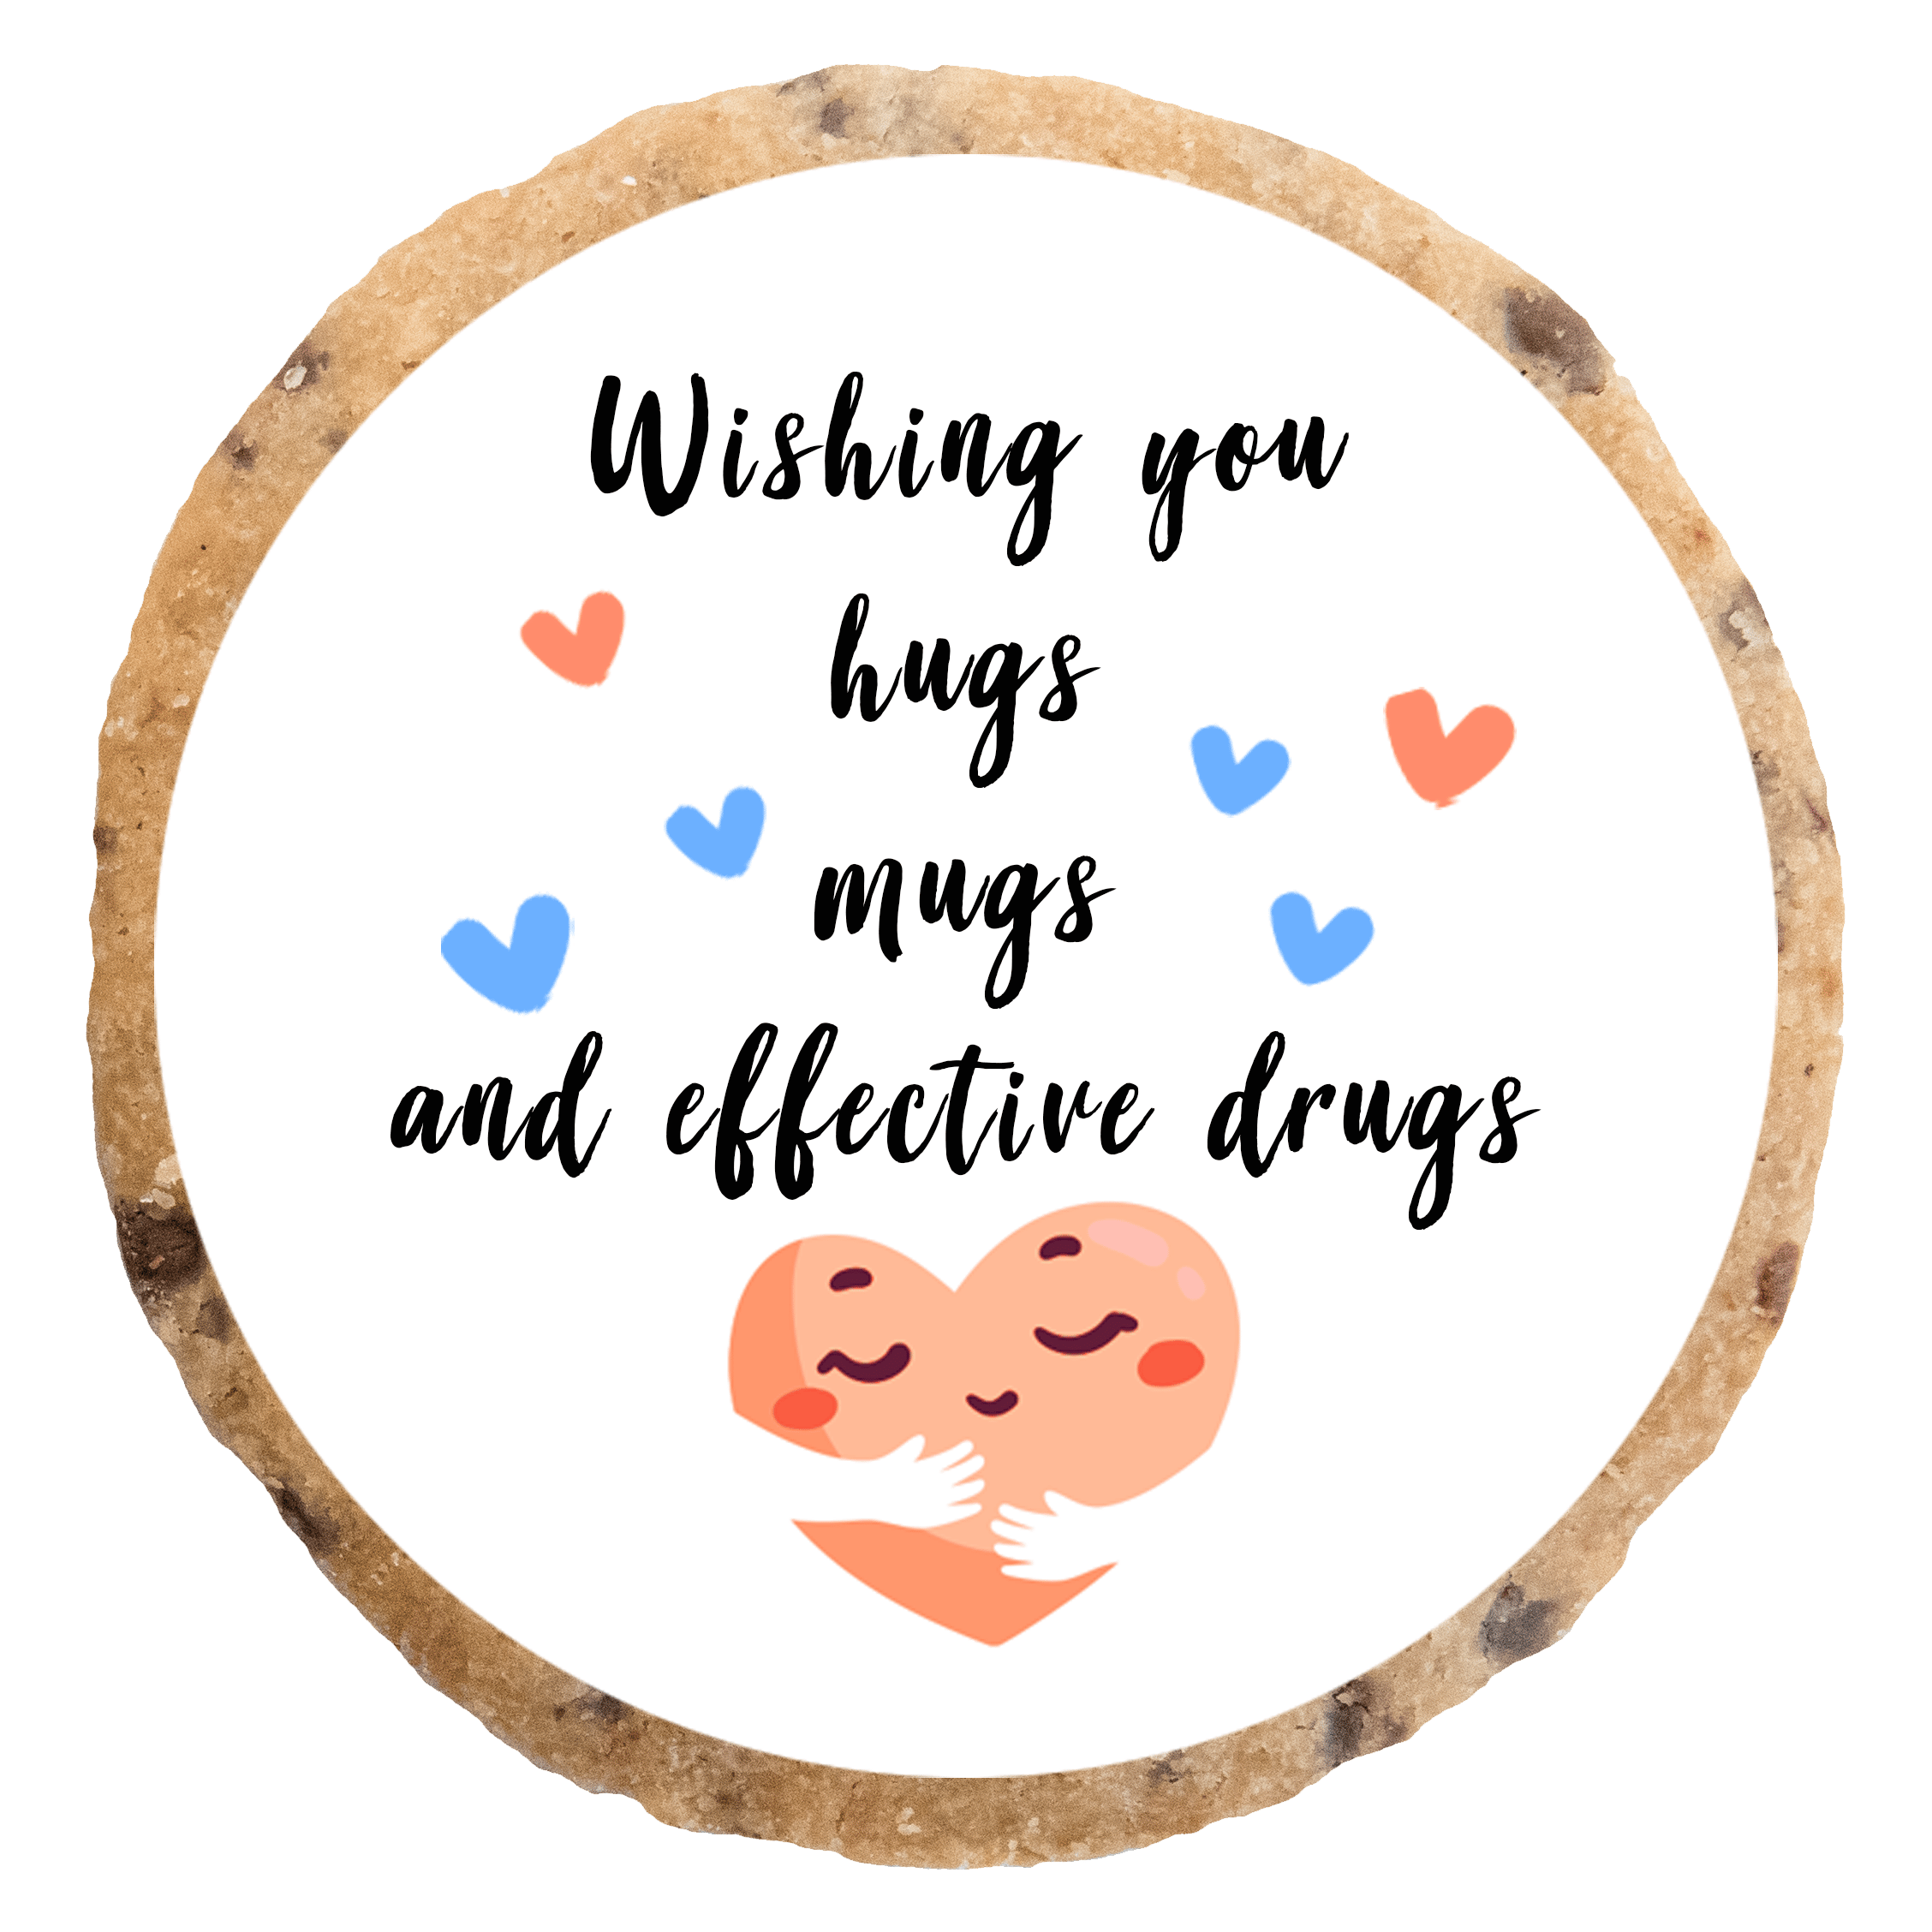 "Wishing you hugs, mugs and effective drugs" MotivKEKS